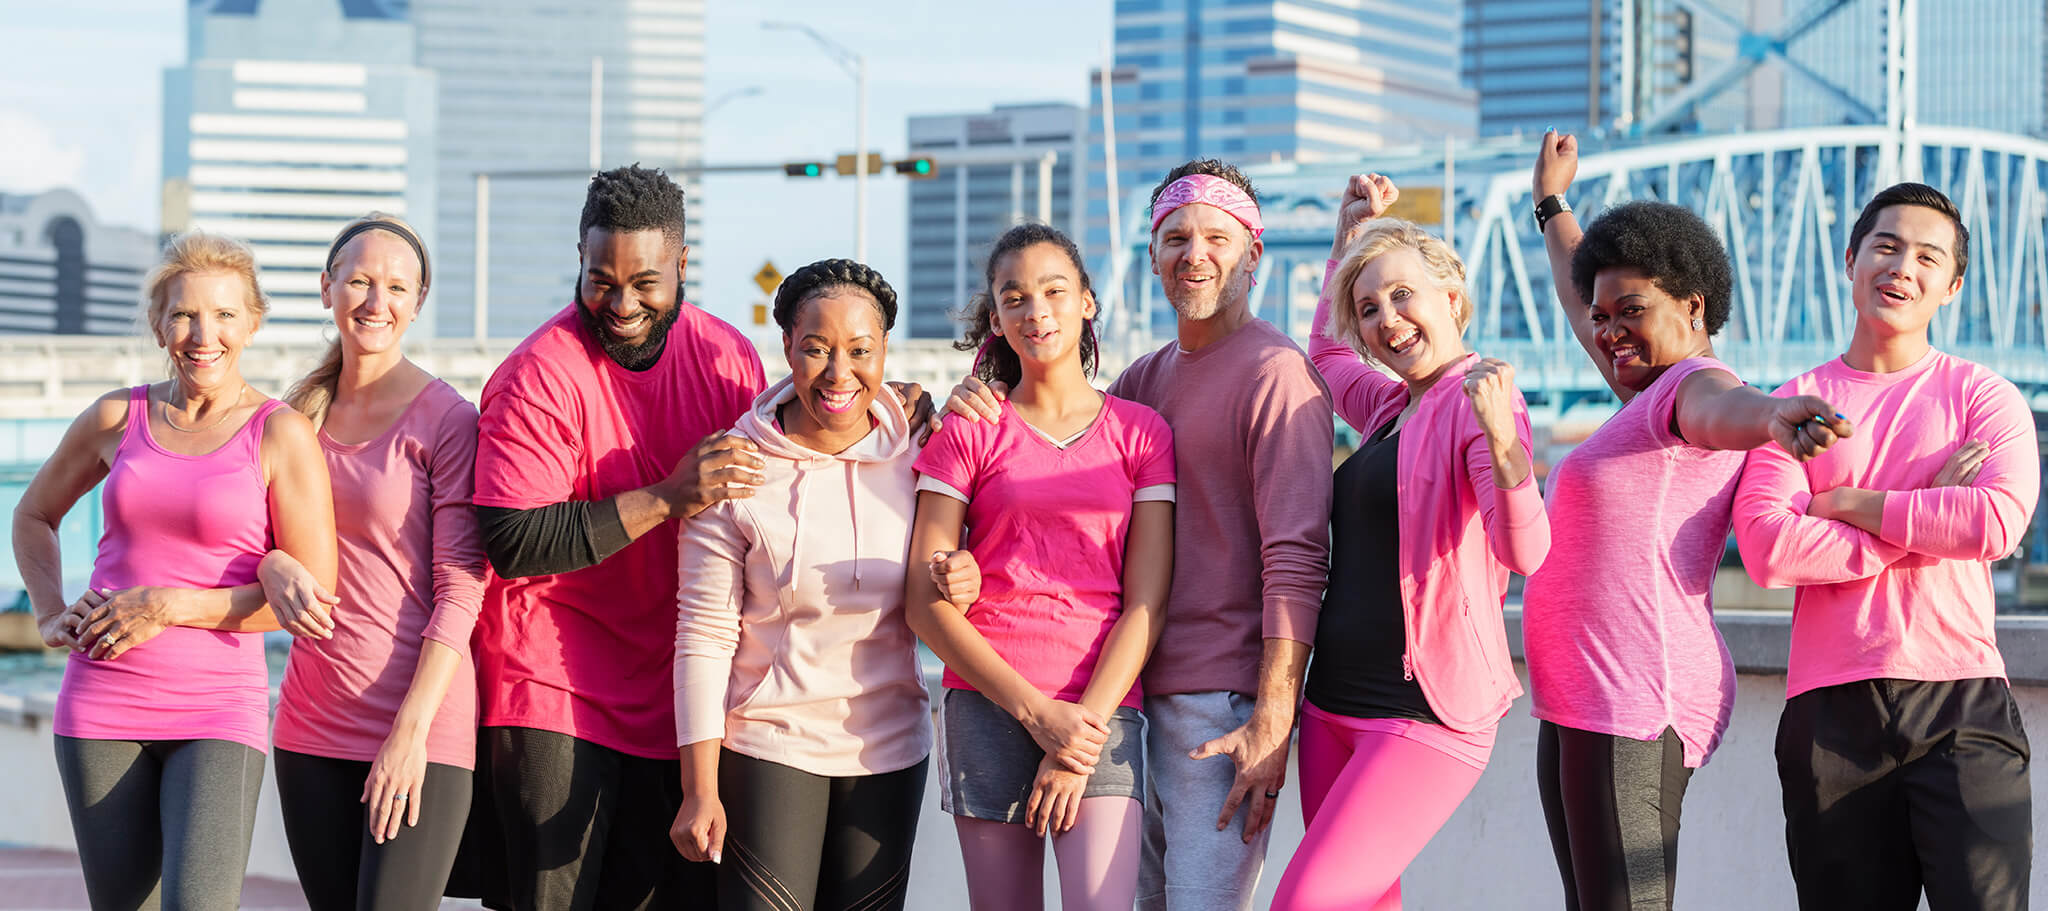 Eine multiethnische Gruppe von Männern und Frauen unterschiedlichen Alters, die zusammenstehen und rosa tragen. Sie sind draußen in einer Stadt und lächeln in die Kamera.